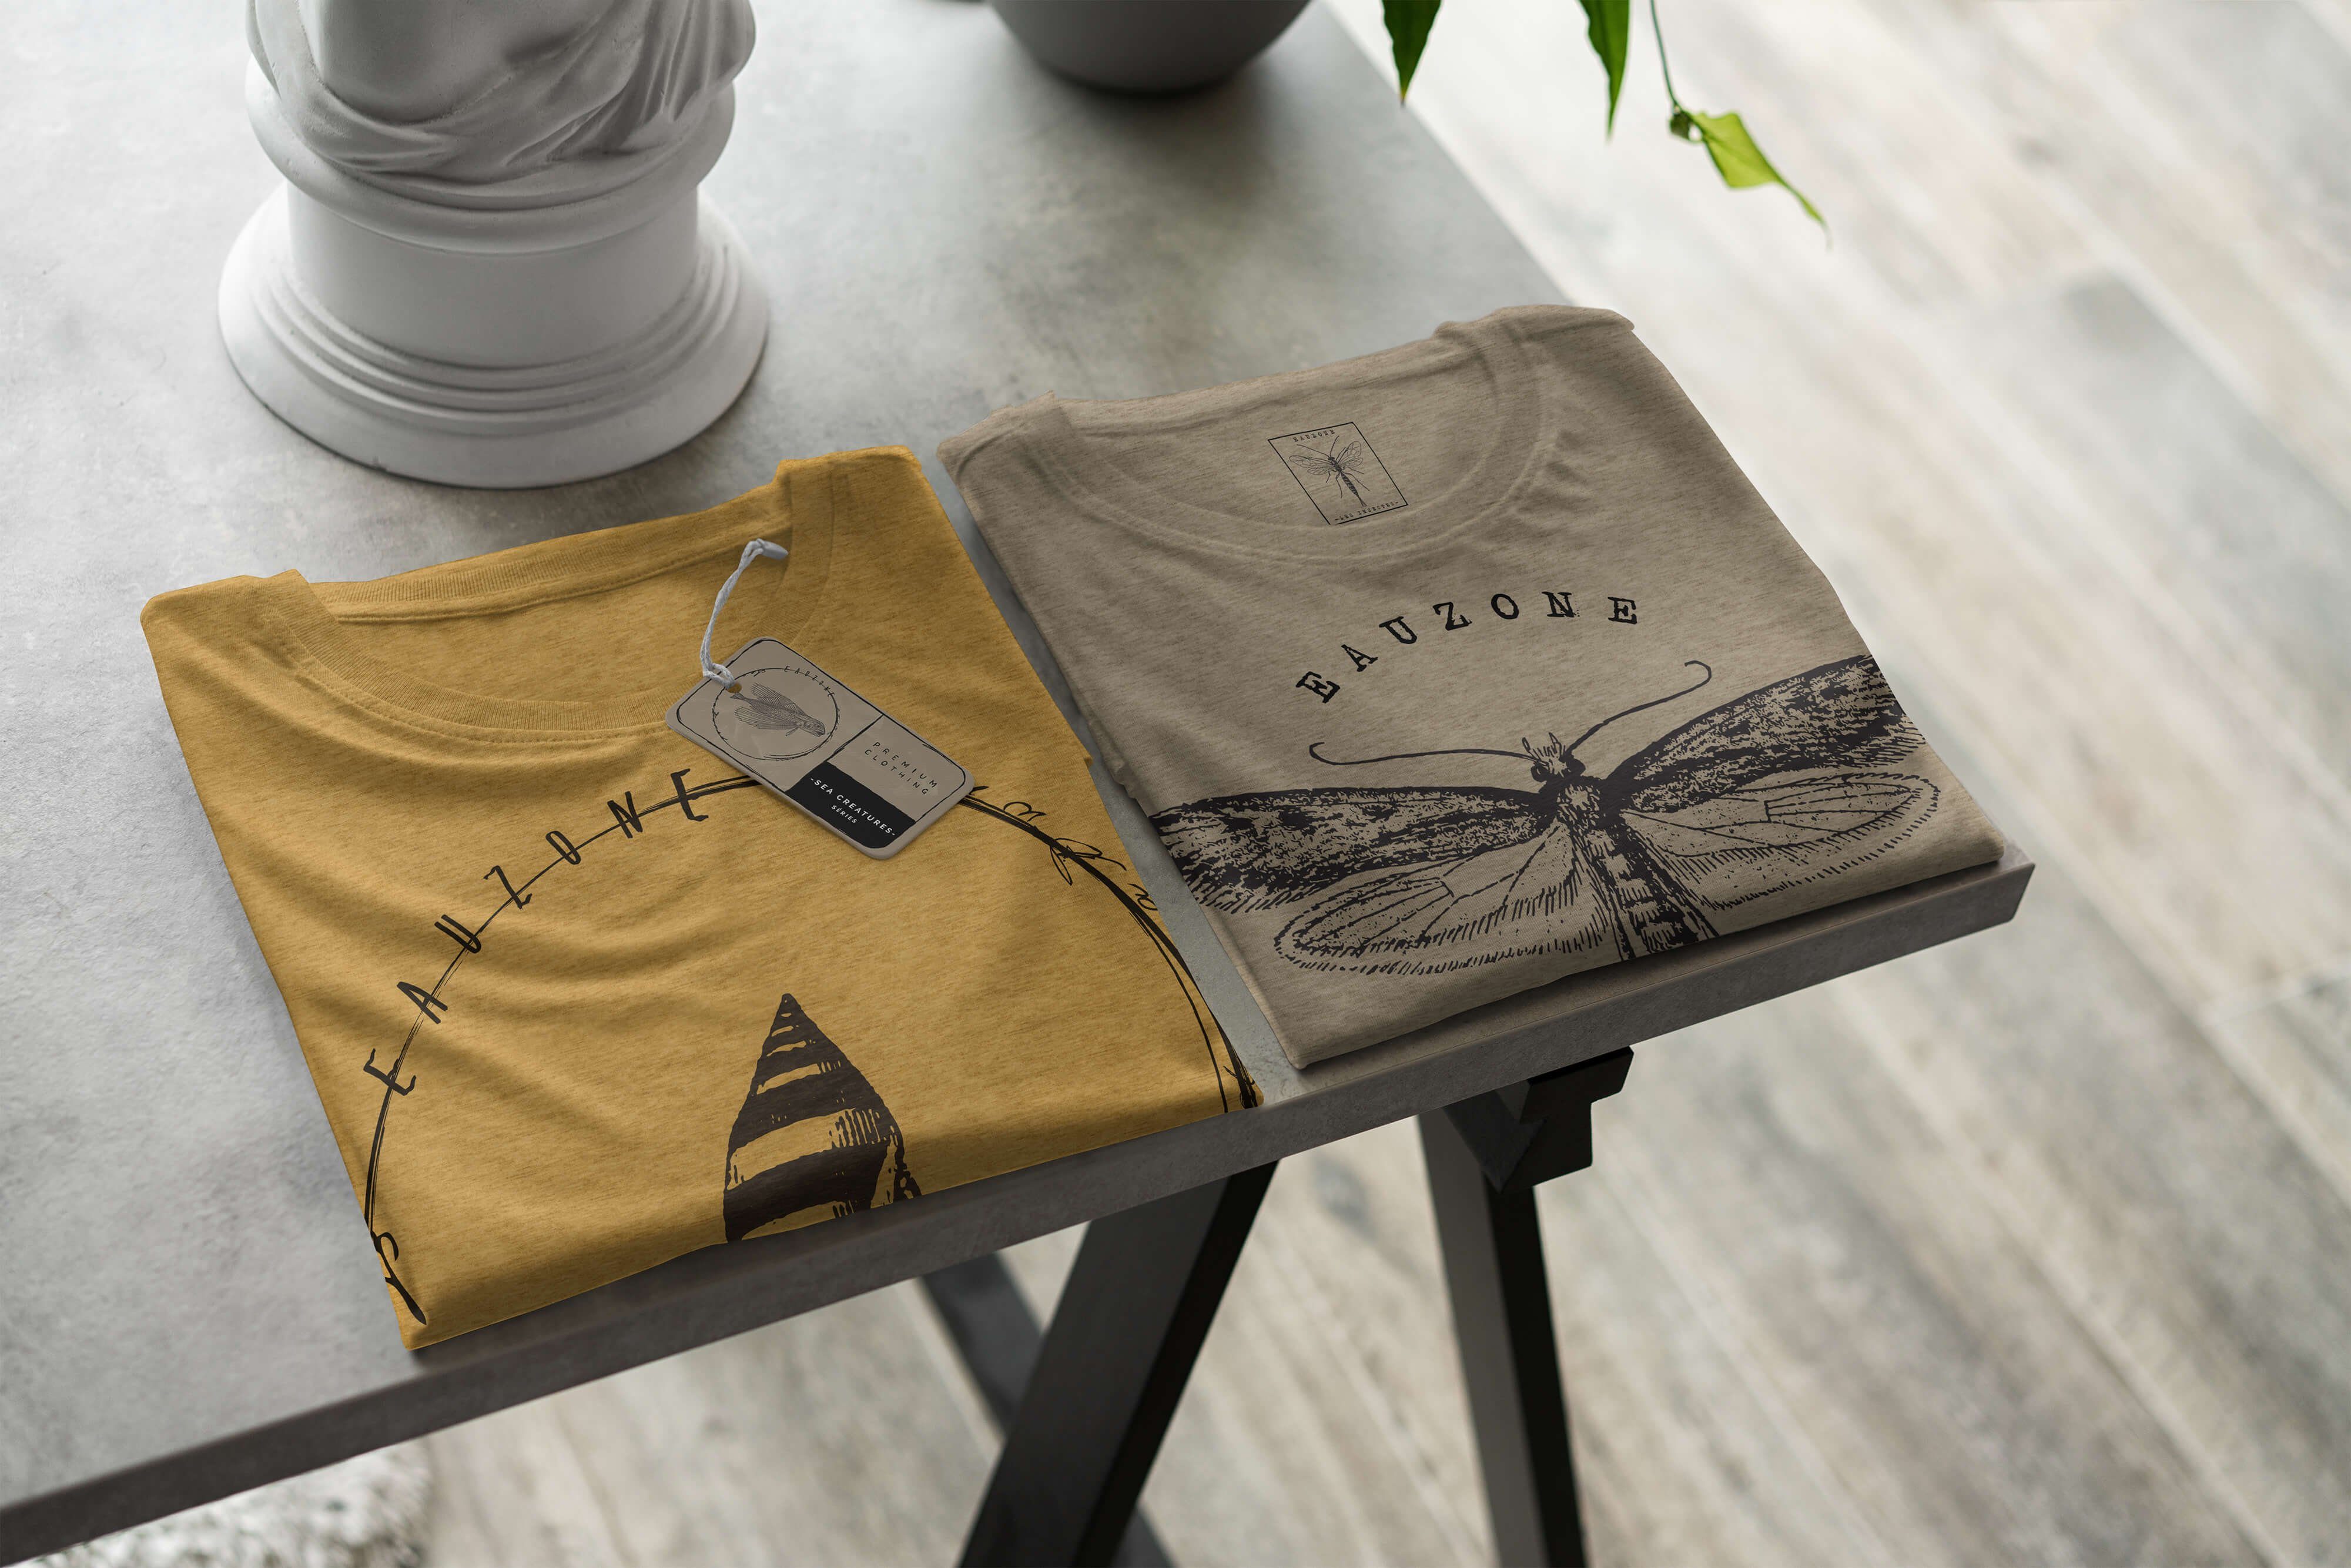 sportlicher feine Schnitt Sinus Fische Tiefsee / Struktur Sea Gold Creatures, T-Shirt 001 - Sea Serie: und Art Antique T-Shirt